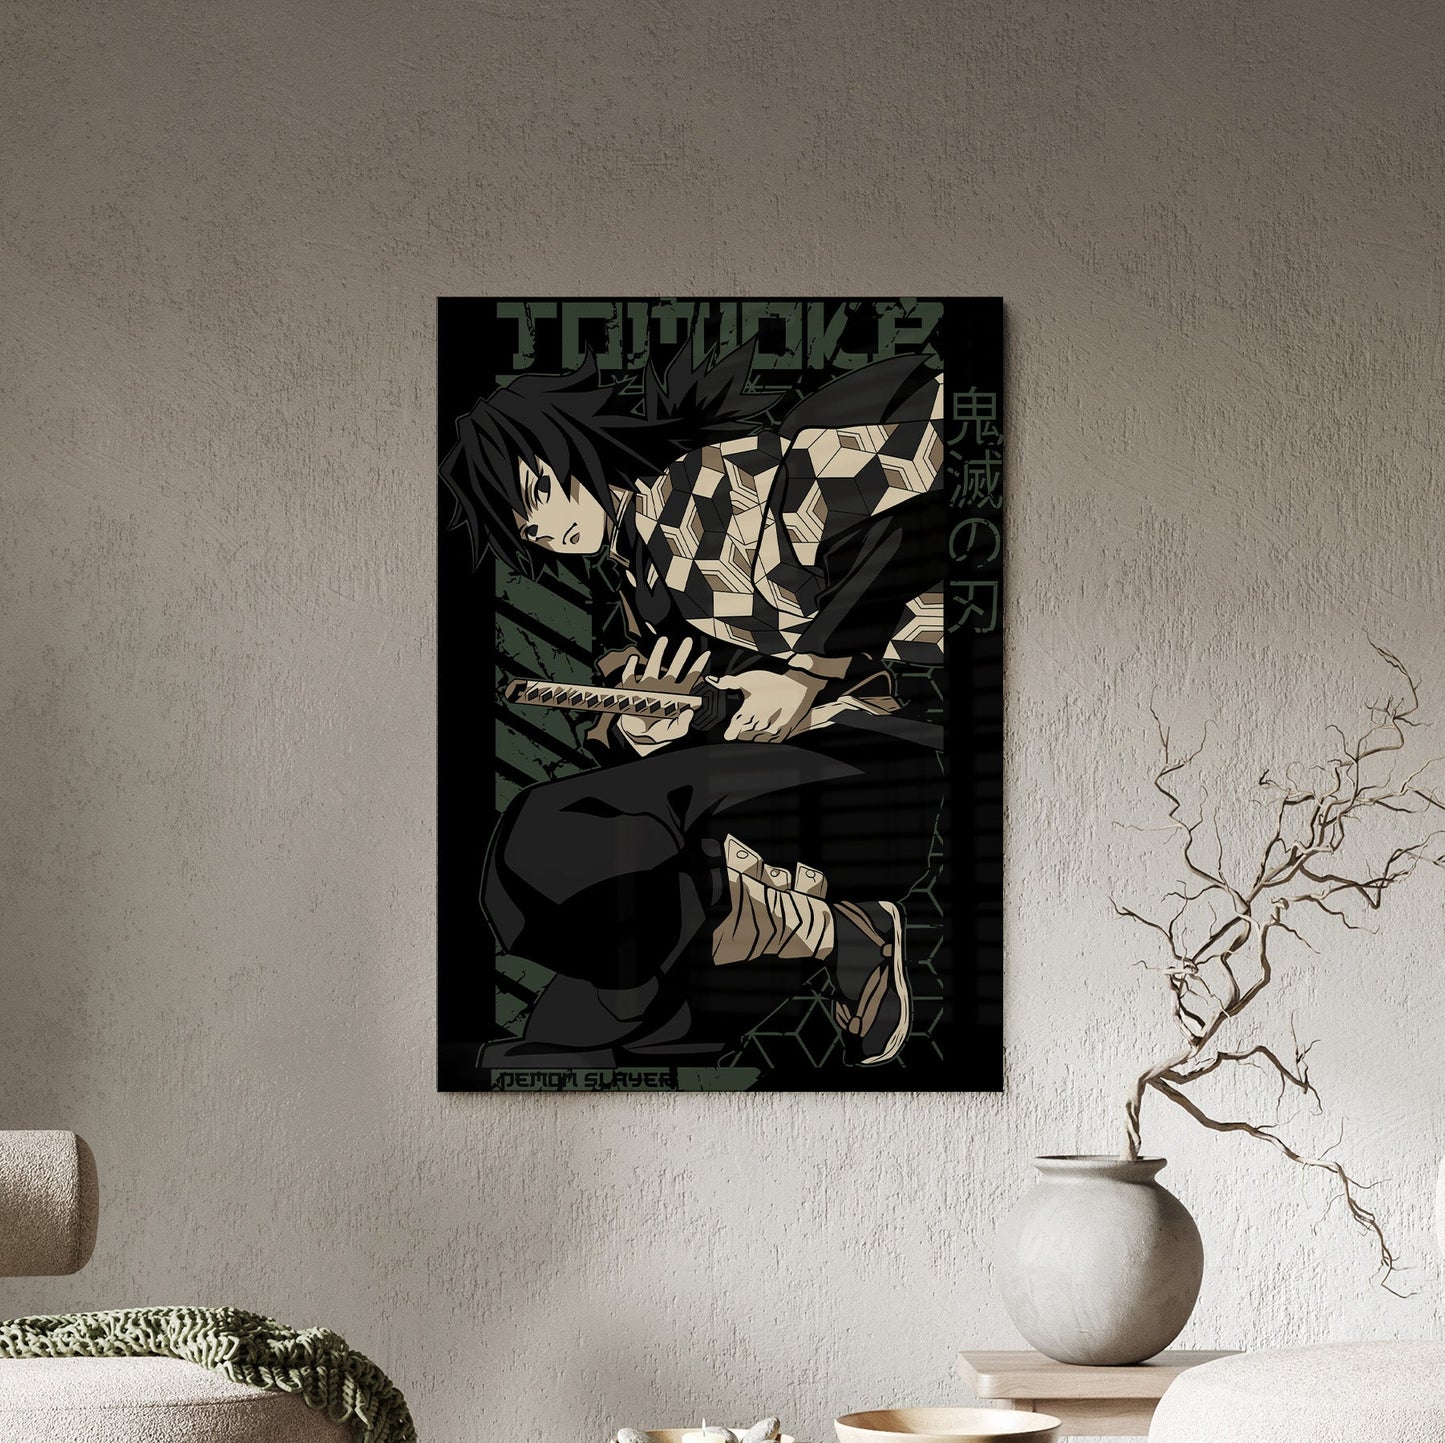 Tomioka Acrylic Poster